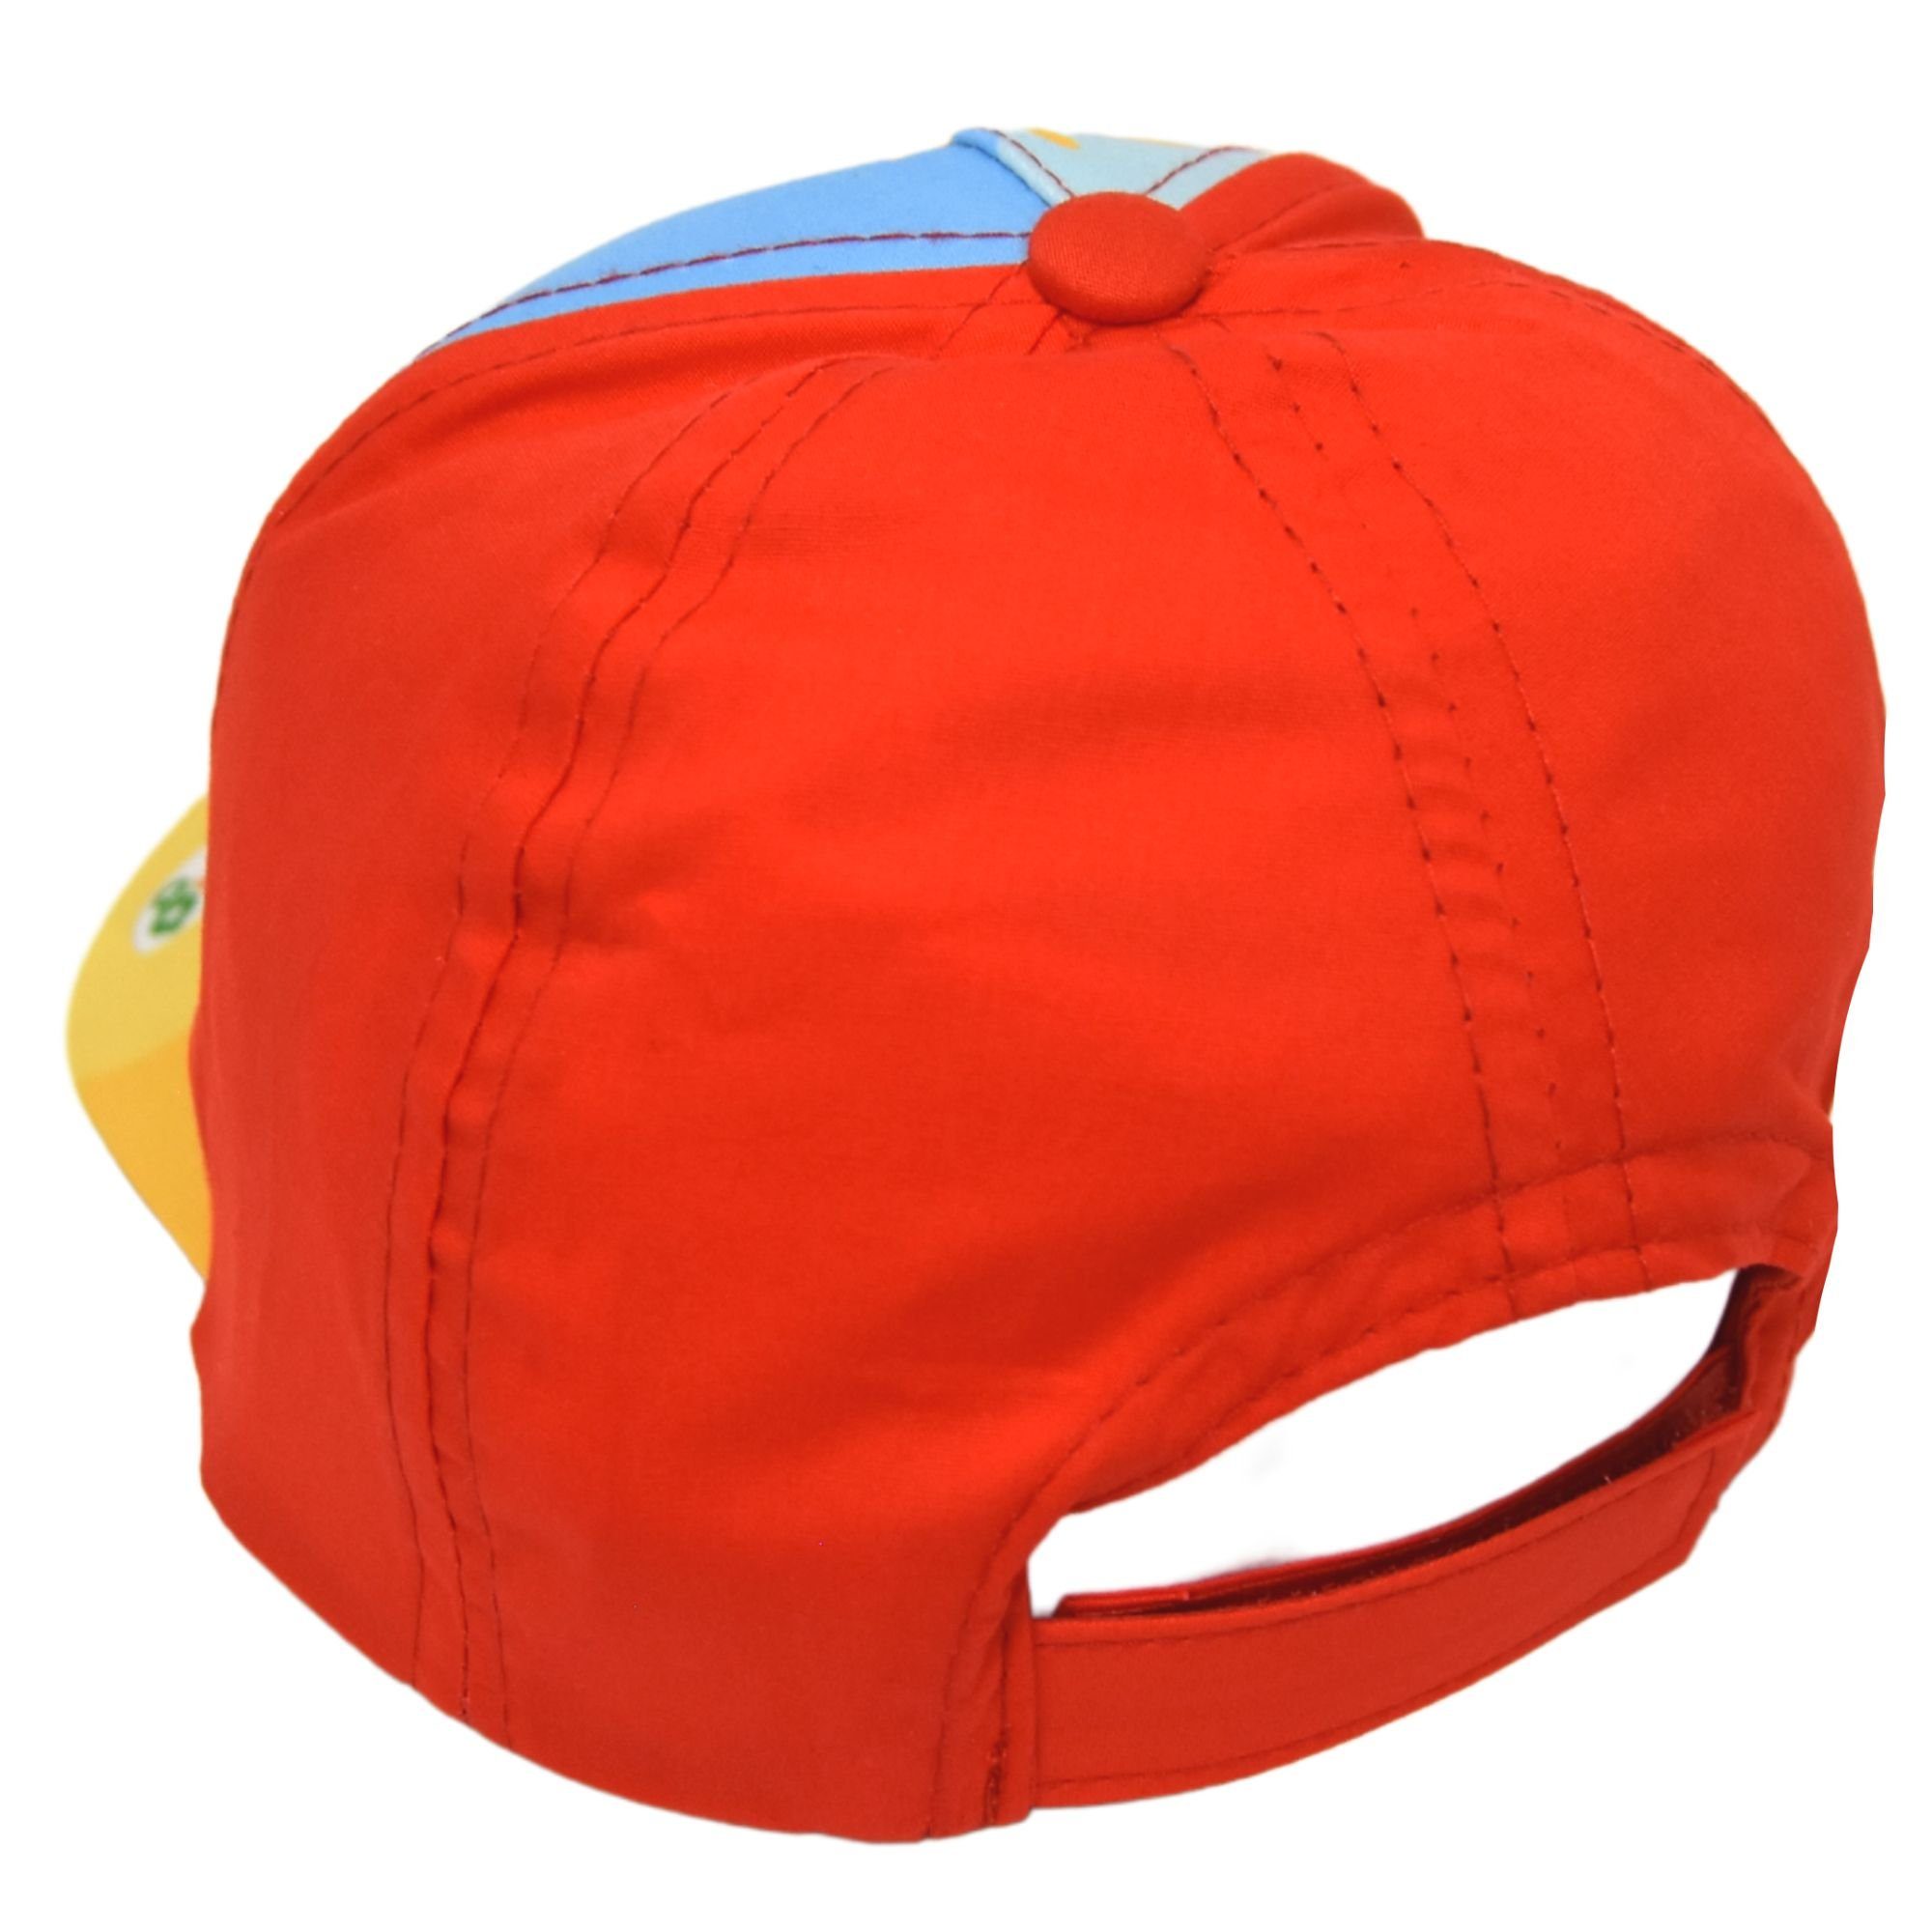 Bing Sommerkappe Rot Größe 52 cm in 50, Cap Baseball